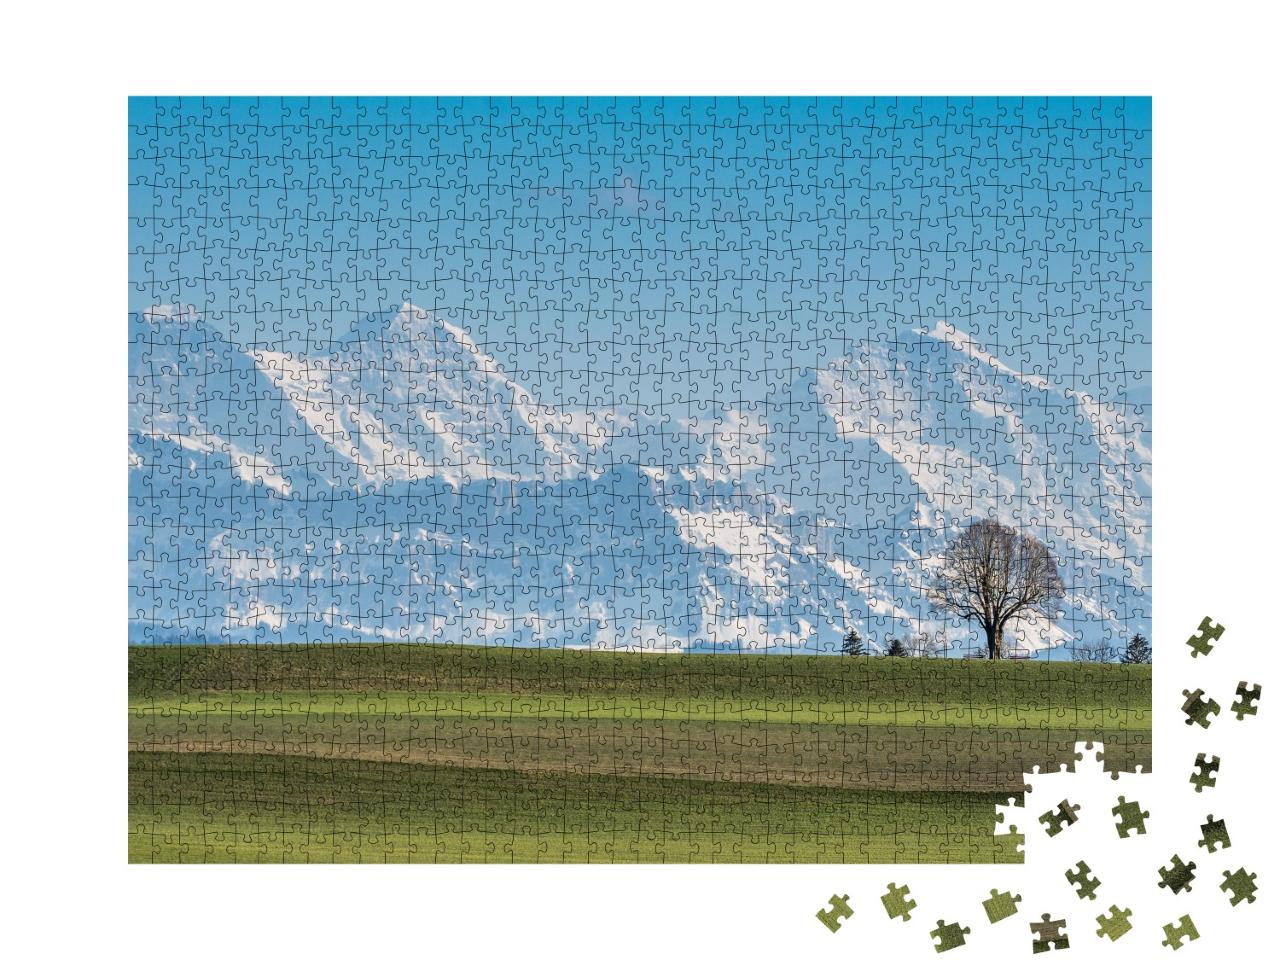 Puzzle de 1000 pièces « Arbre devant l'Eiger, le Mönch et la Jungfrau par une belle journée de printemps »